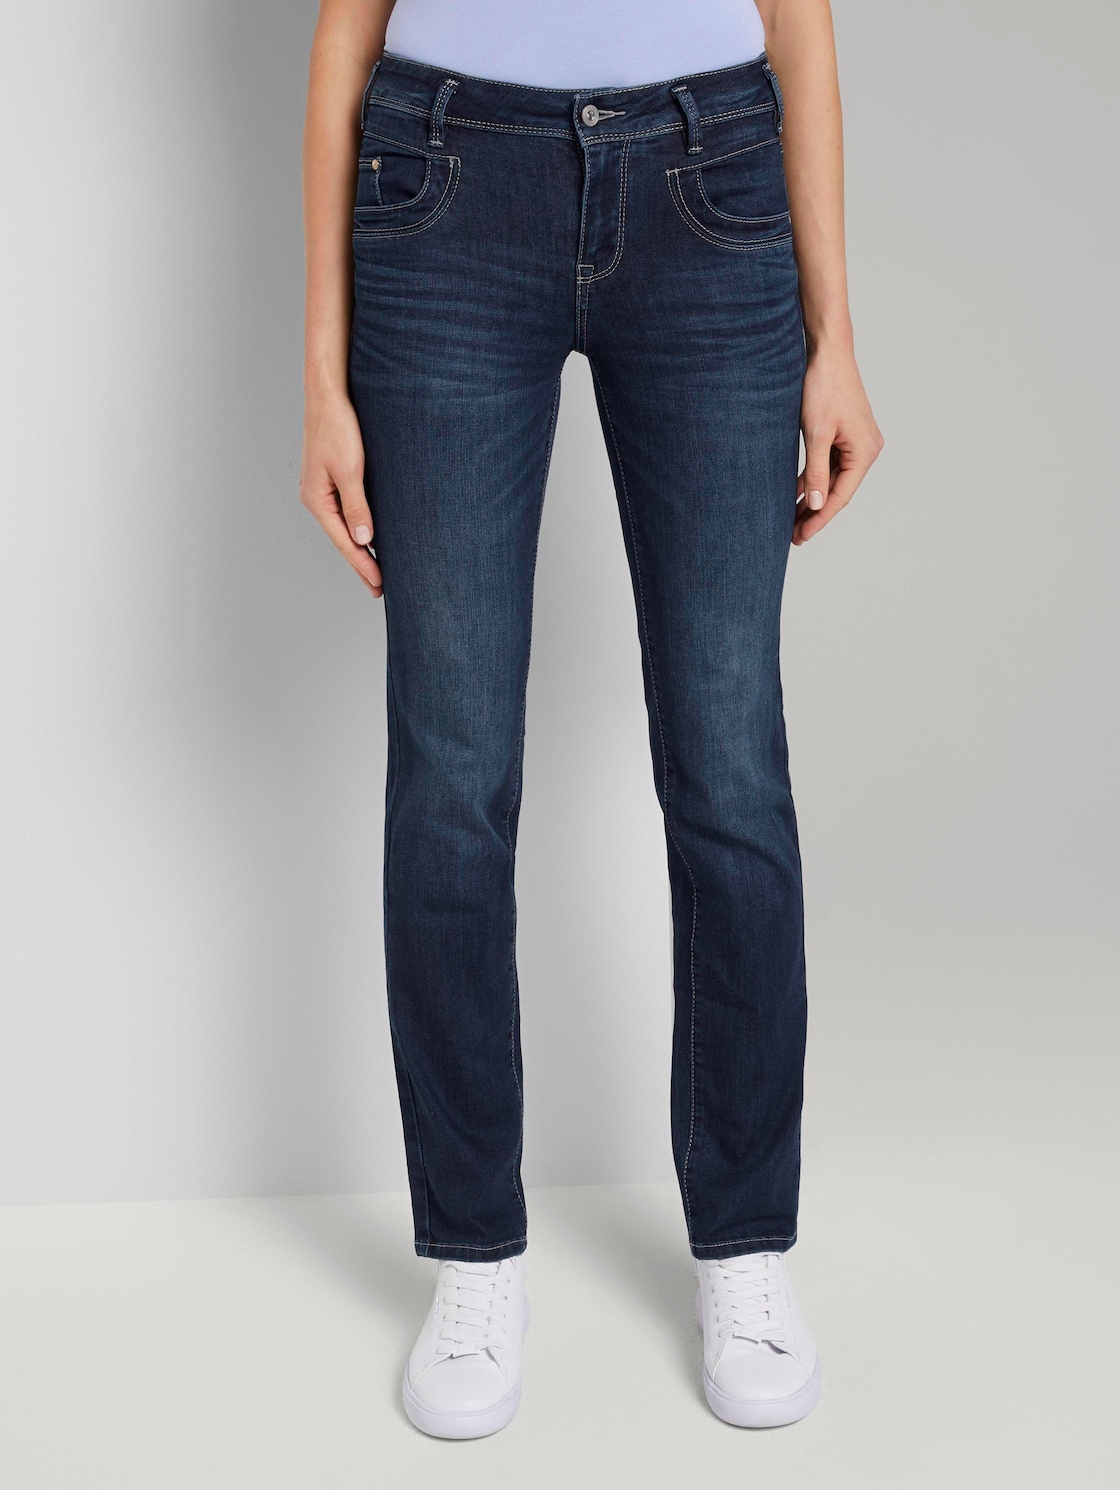 TOM TAILOR Alexa straight Jeans, Vrouwen, blauw, Größe 31/34